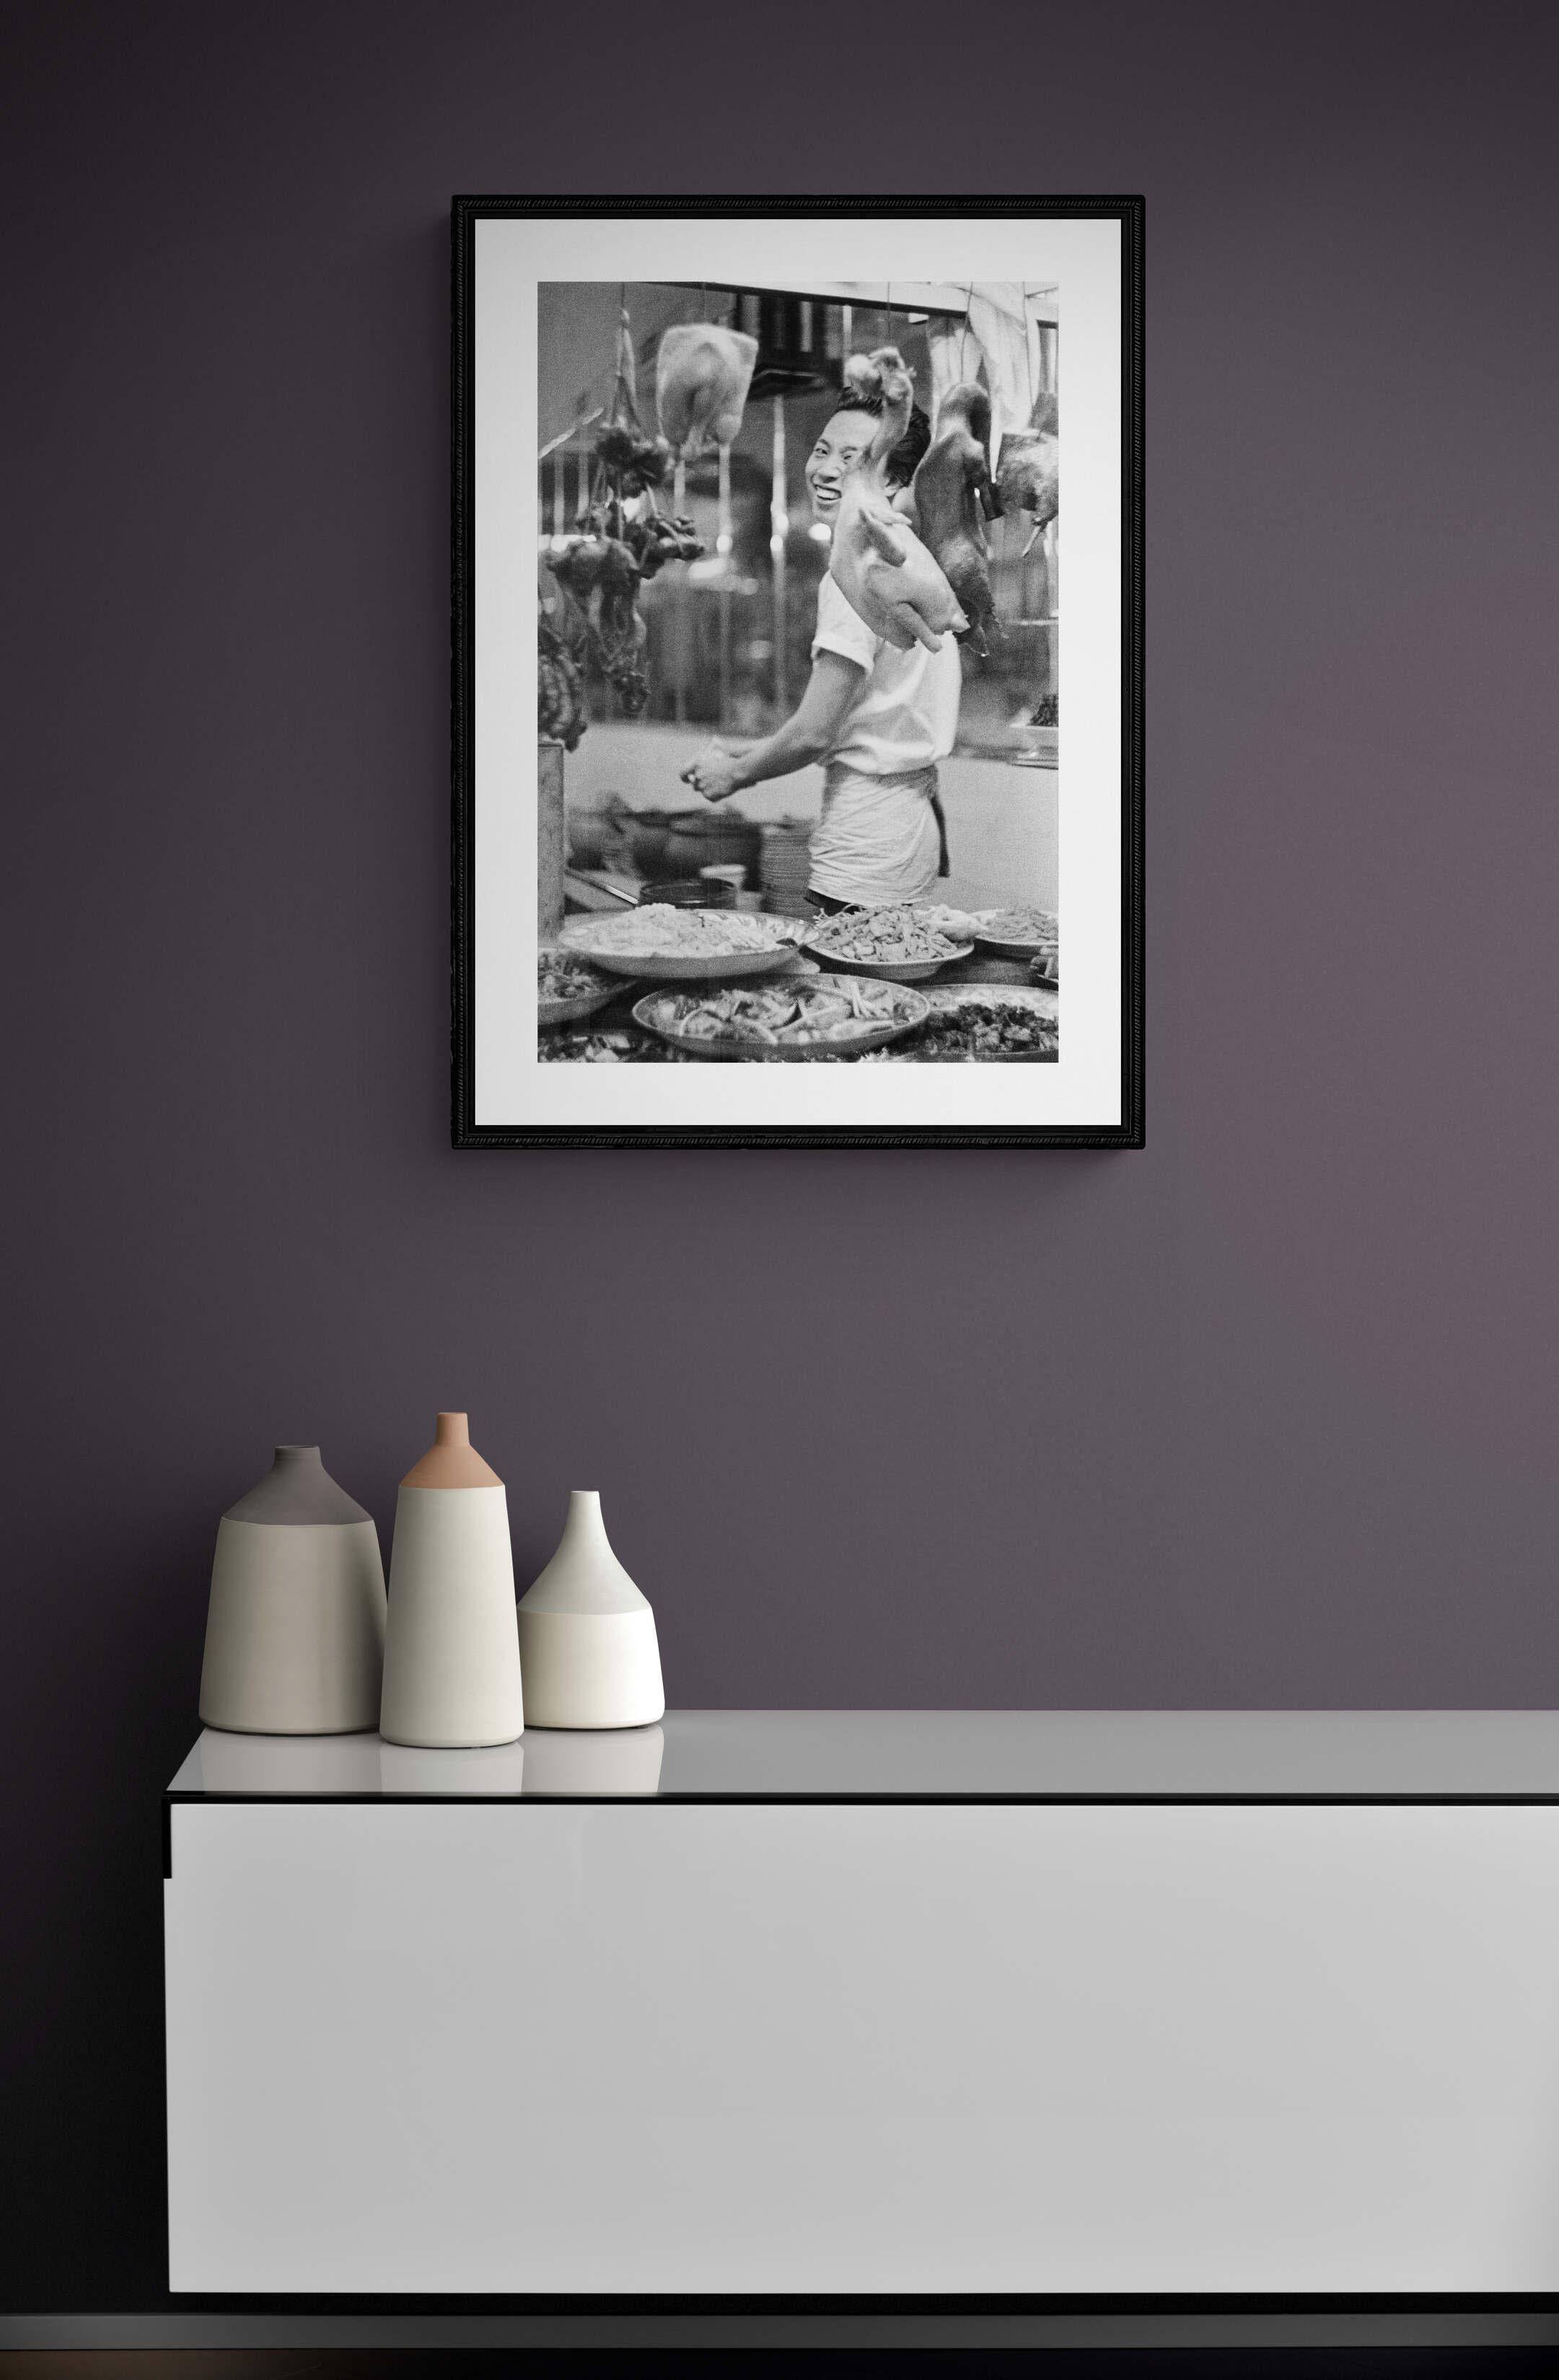 Kunstwerk # 1 auf 5 verkauft in limitierter Auflage in perfektem Zustand 
Il cuoco felice
Dieses Foto wurde 1959 aufgenommen, später gedruckt, das Negativ wurde zu Lebzeiten des Künstlers digitalisiert und die technischen Parameter (Bildausschnitt,